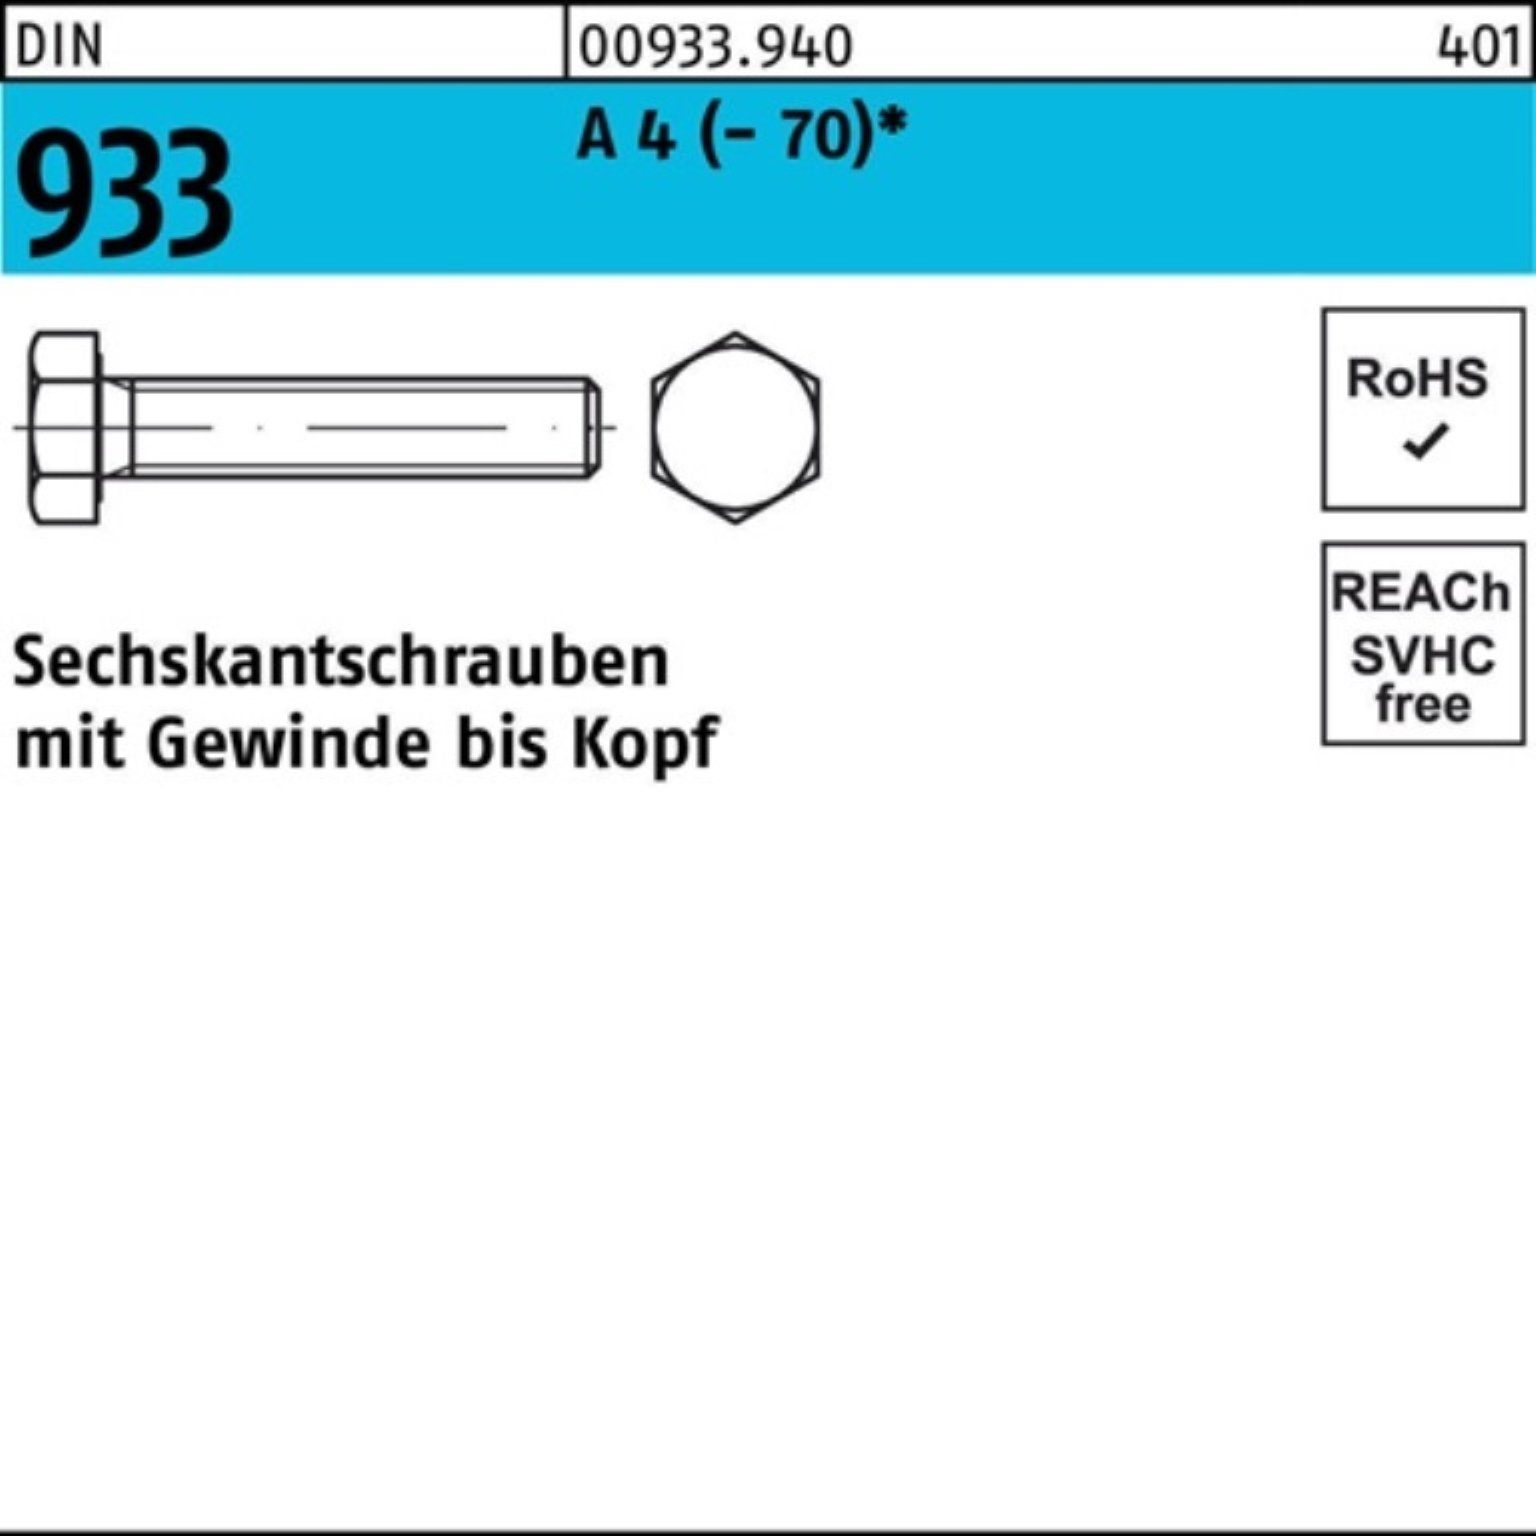 Reyher Sechskantschraube 200er Pack Sechskantschraube DIN 933 VG M6x 30 A 4 (70) 200 Stück D